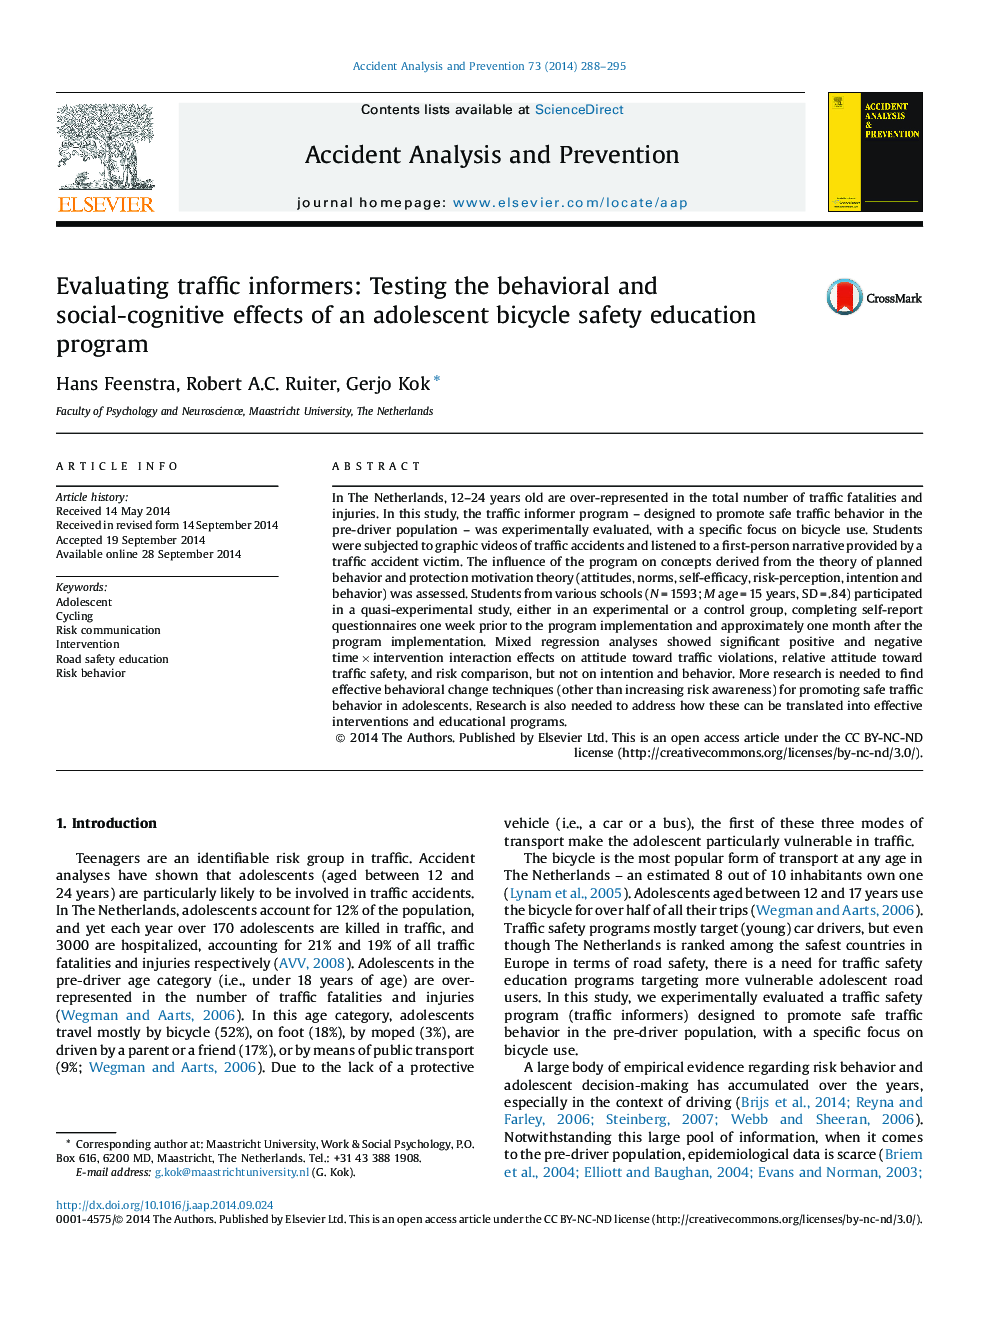 ارزیابی معلمان ترافیکی: تست اثرات رفتاری و اجتماعی شناختی یک برنامه آموزش ایمنی دوچرخه نوجوانان 